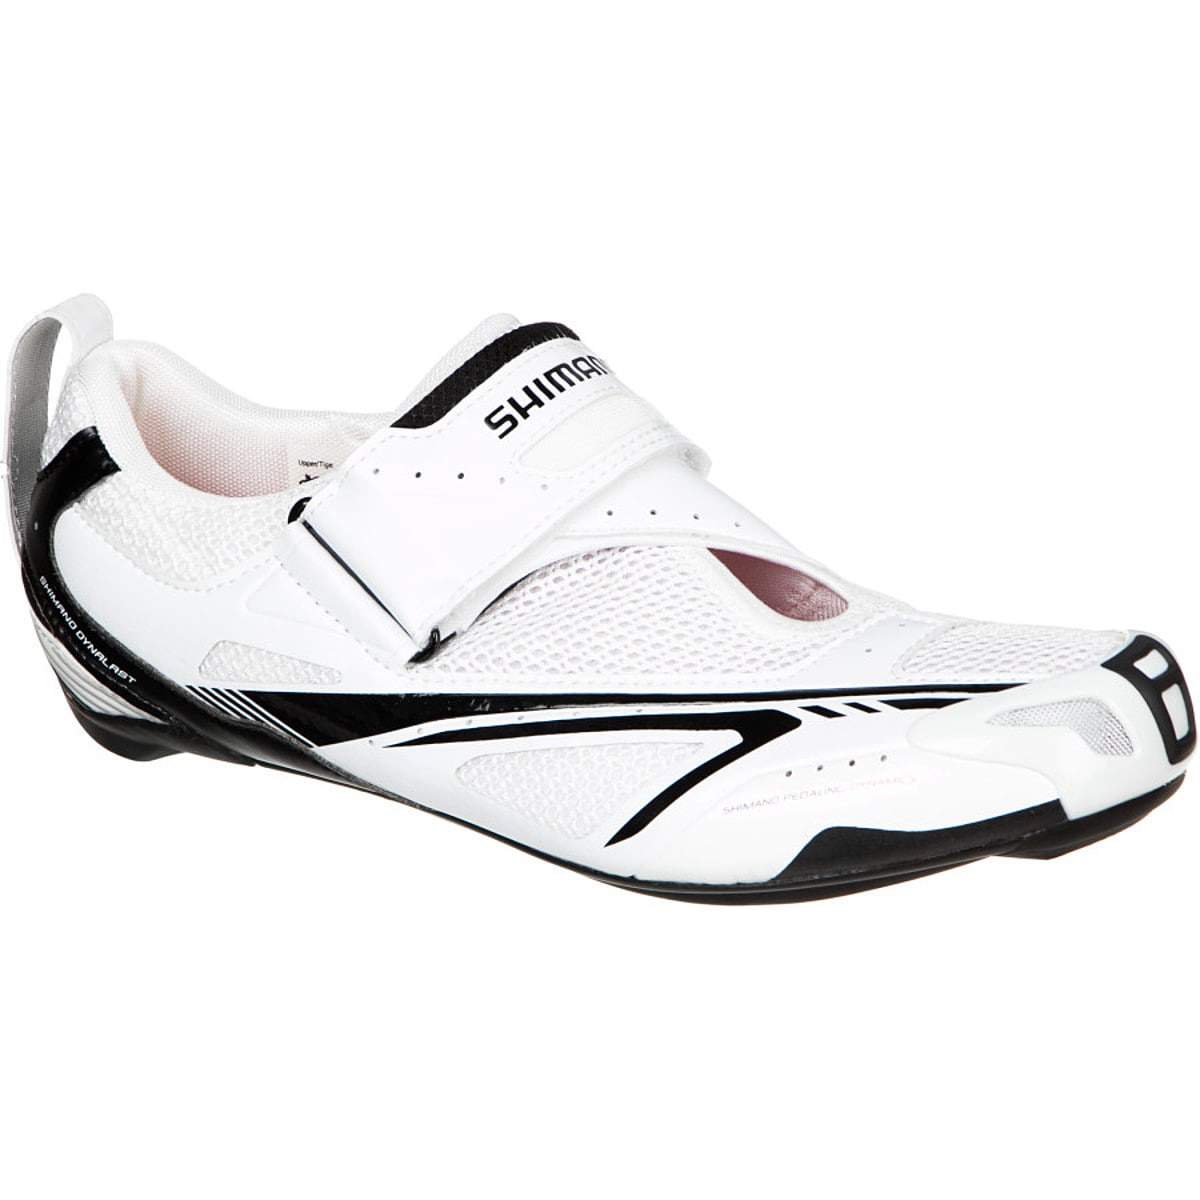 Shimano SH-TR60 Men's Cycling Shoe - Men's